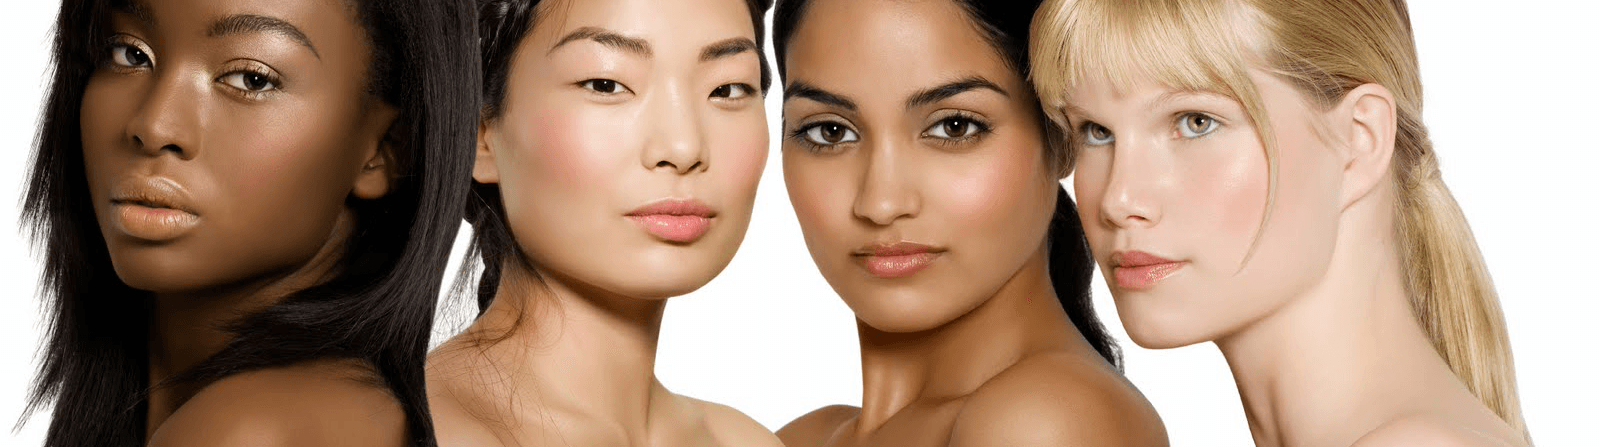 multi-cultural skin types